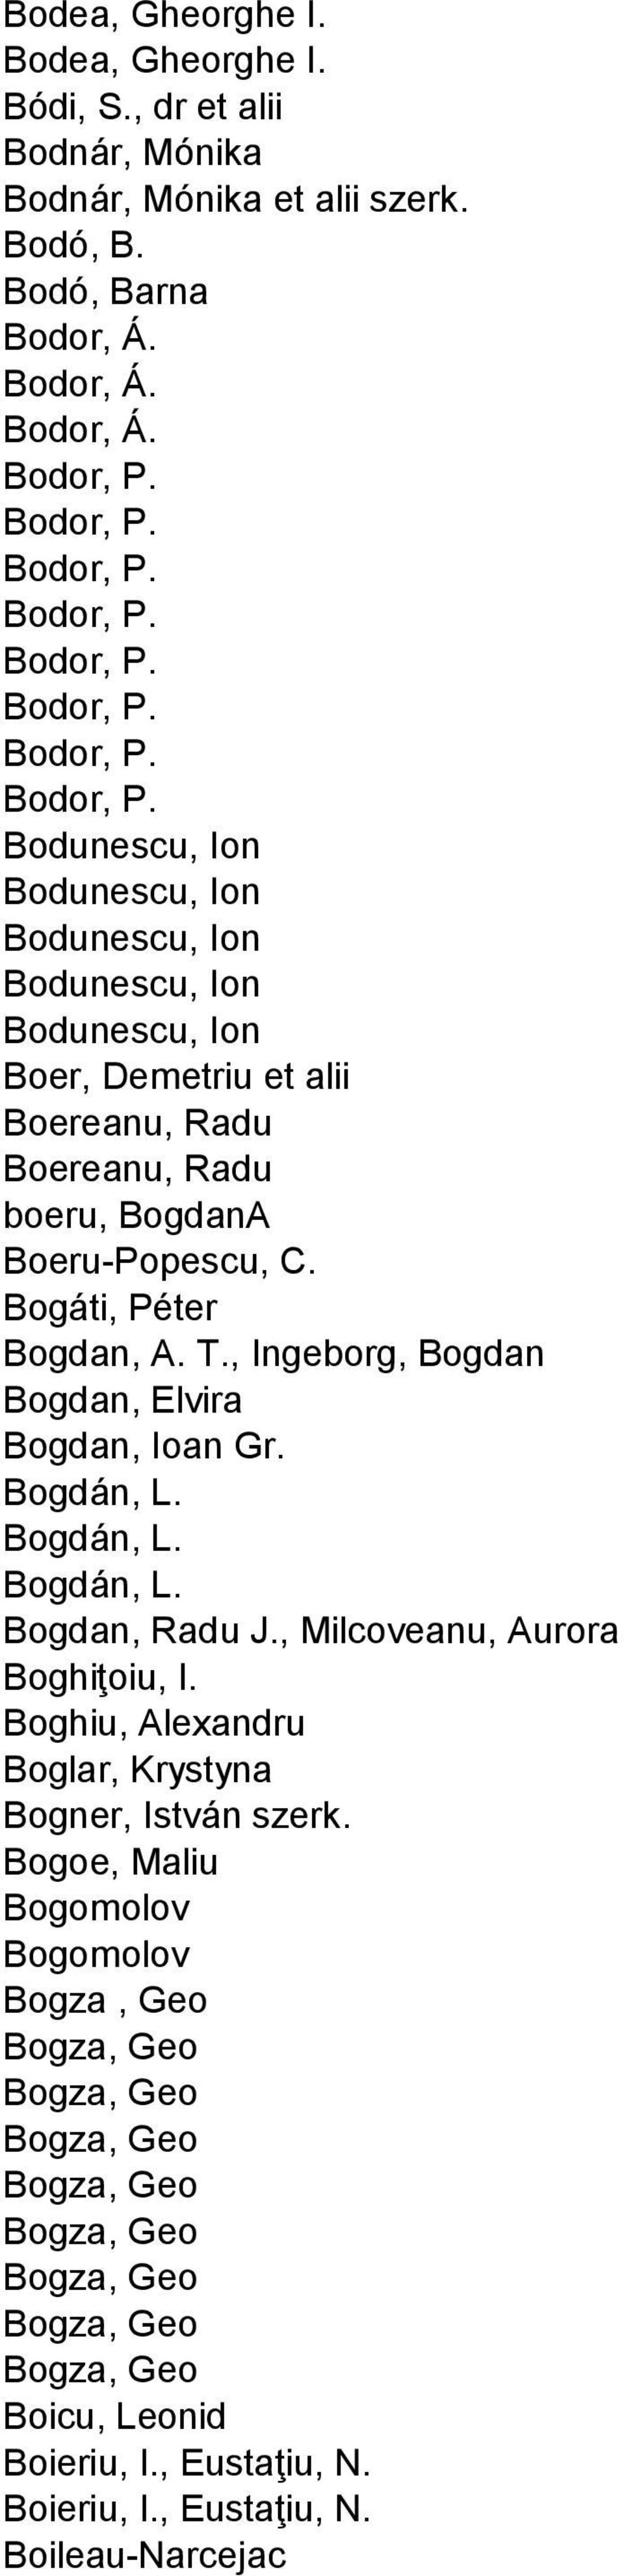 Bogáti, Péter Bogdan, A. T., Ingeborg, Bogdan Bogdan, Elvira Bogdan, Ioan Gr. Bogdán, L. Bogdán, L. Bogdán, L. Bogdan, Radu J., Milcoveanu, Aurora Boghiţoiu, I.